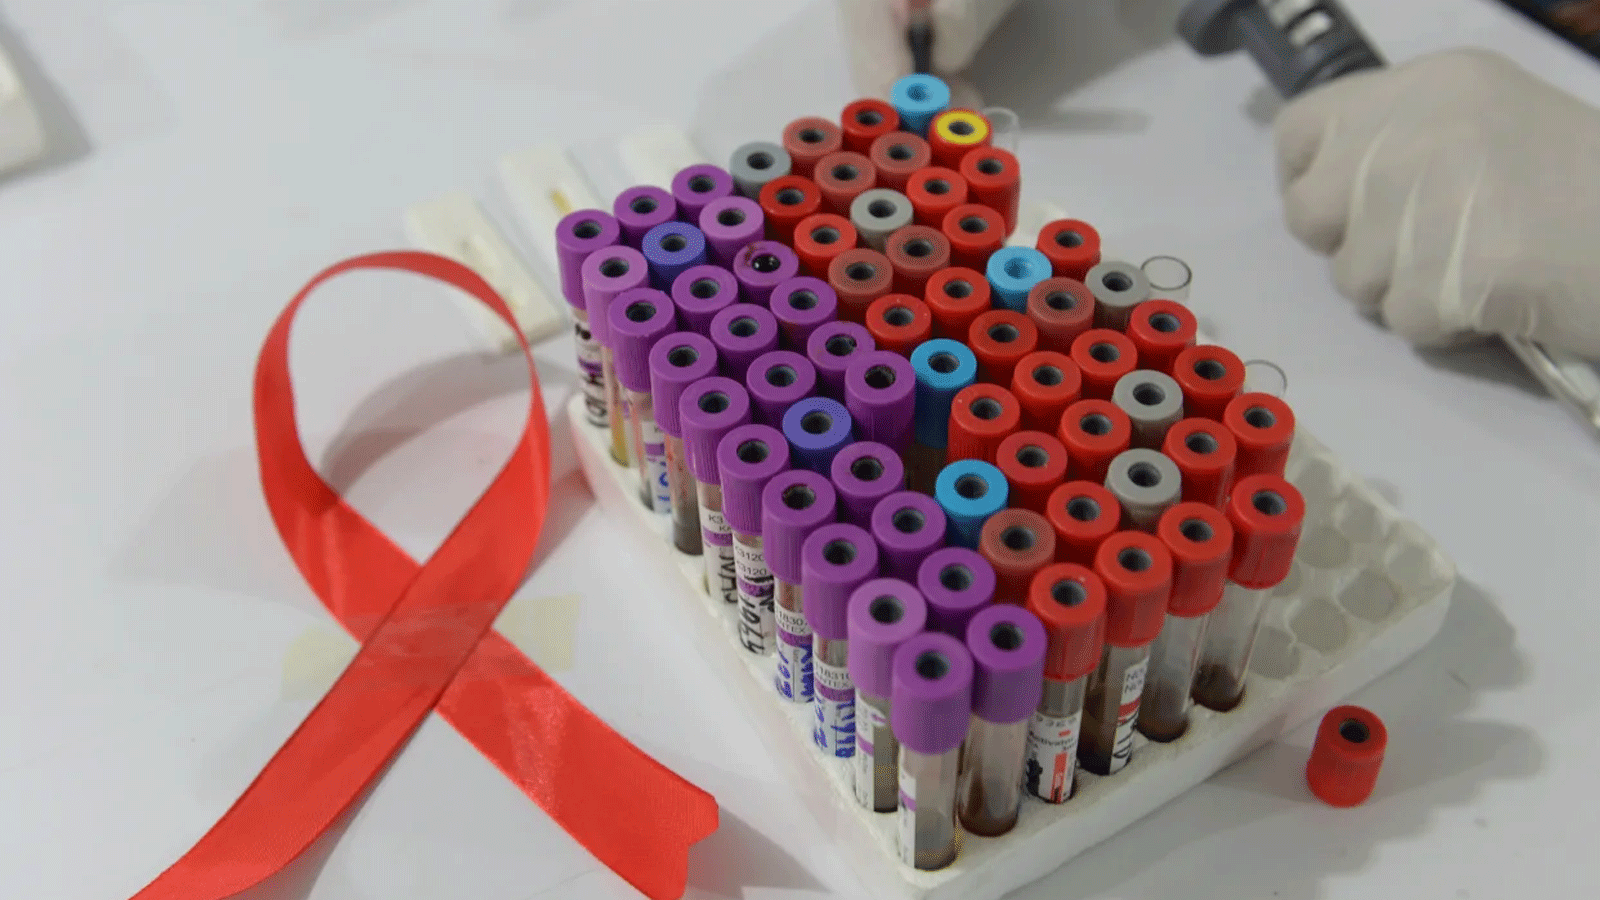 الأبحاث تستمر لإيجاد علاج نهائي لفيروس نقص المناعة البشرية / الإيدز المزمن والقاتل في بعض الأحيان